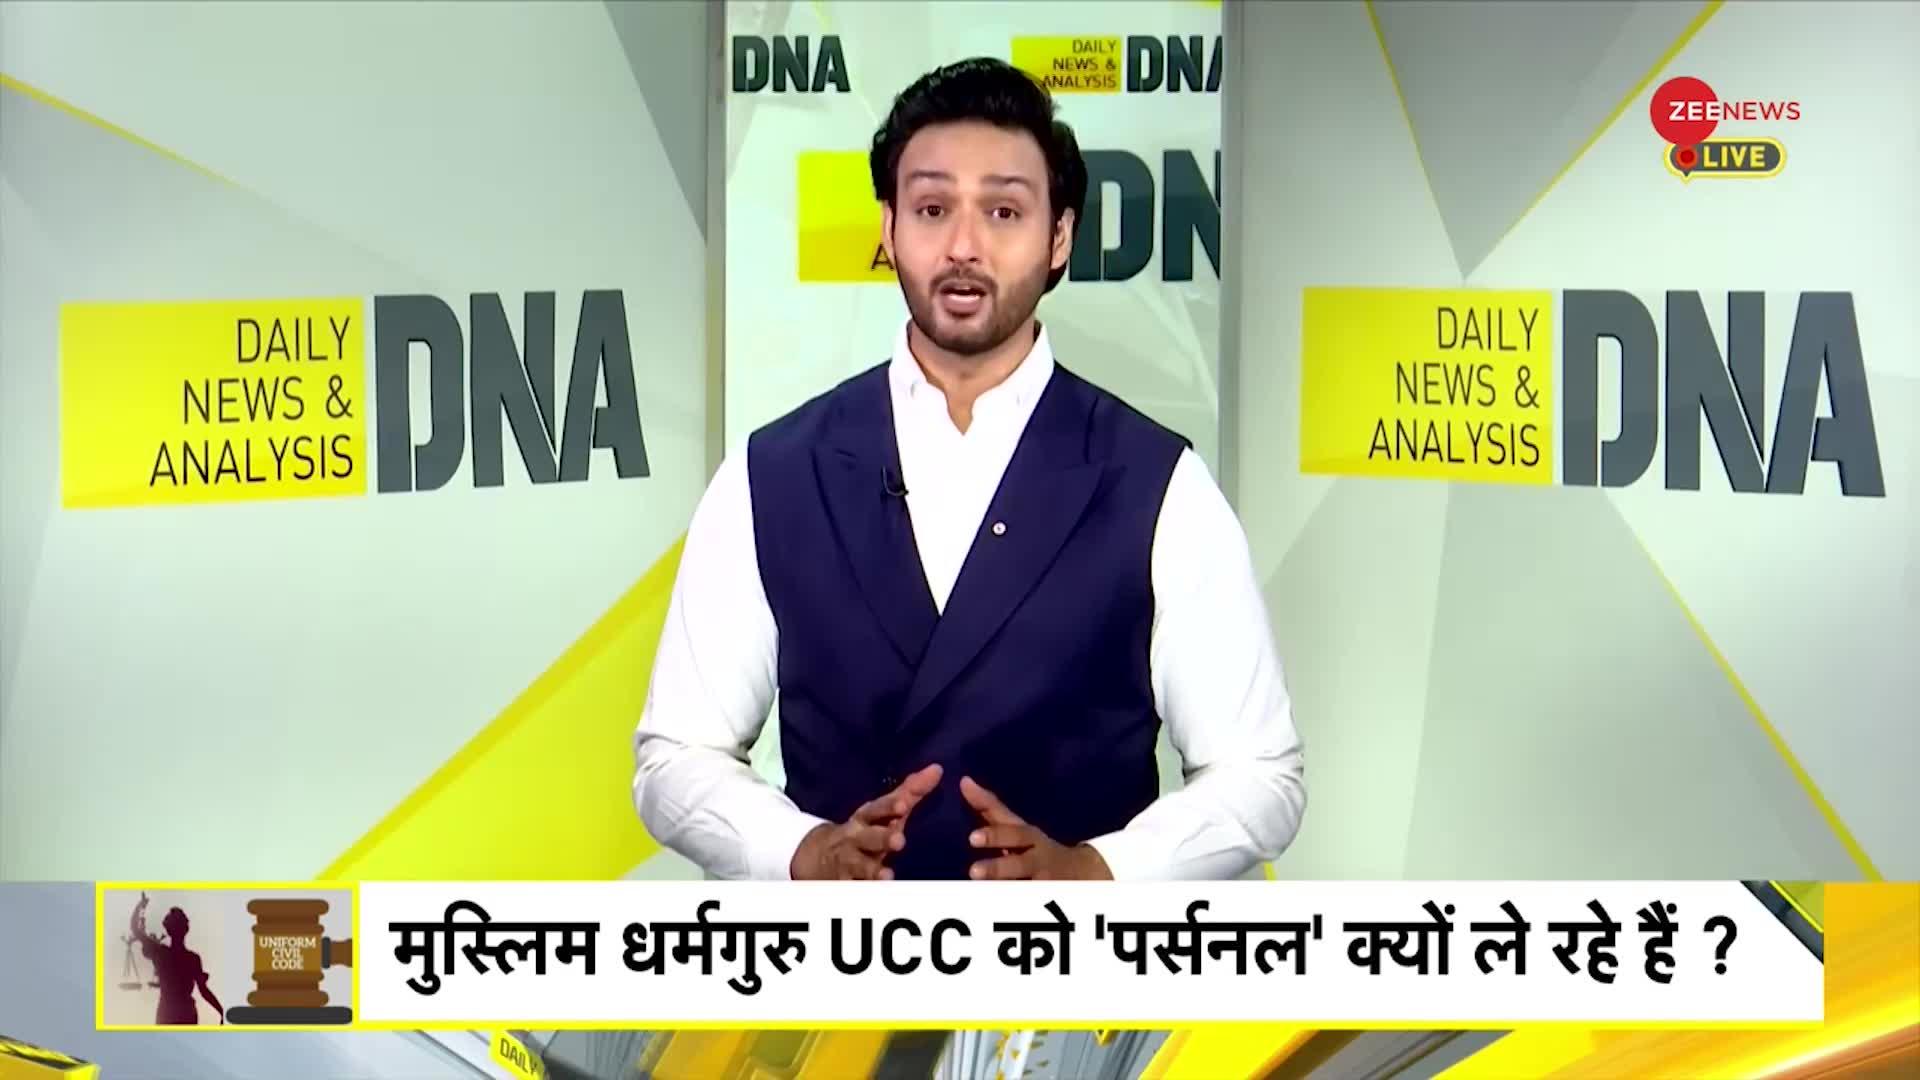 DNA: Uniform Civil Code: मुस्लिम धर्मगुरु UCC को इतना 'पर्सनल' क्यों ले रहे हैं?